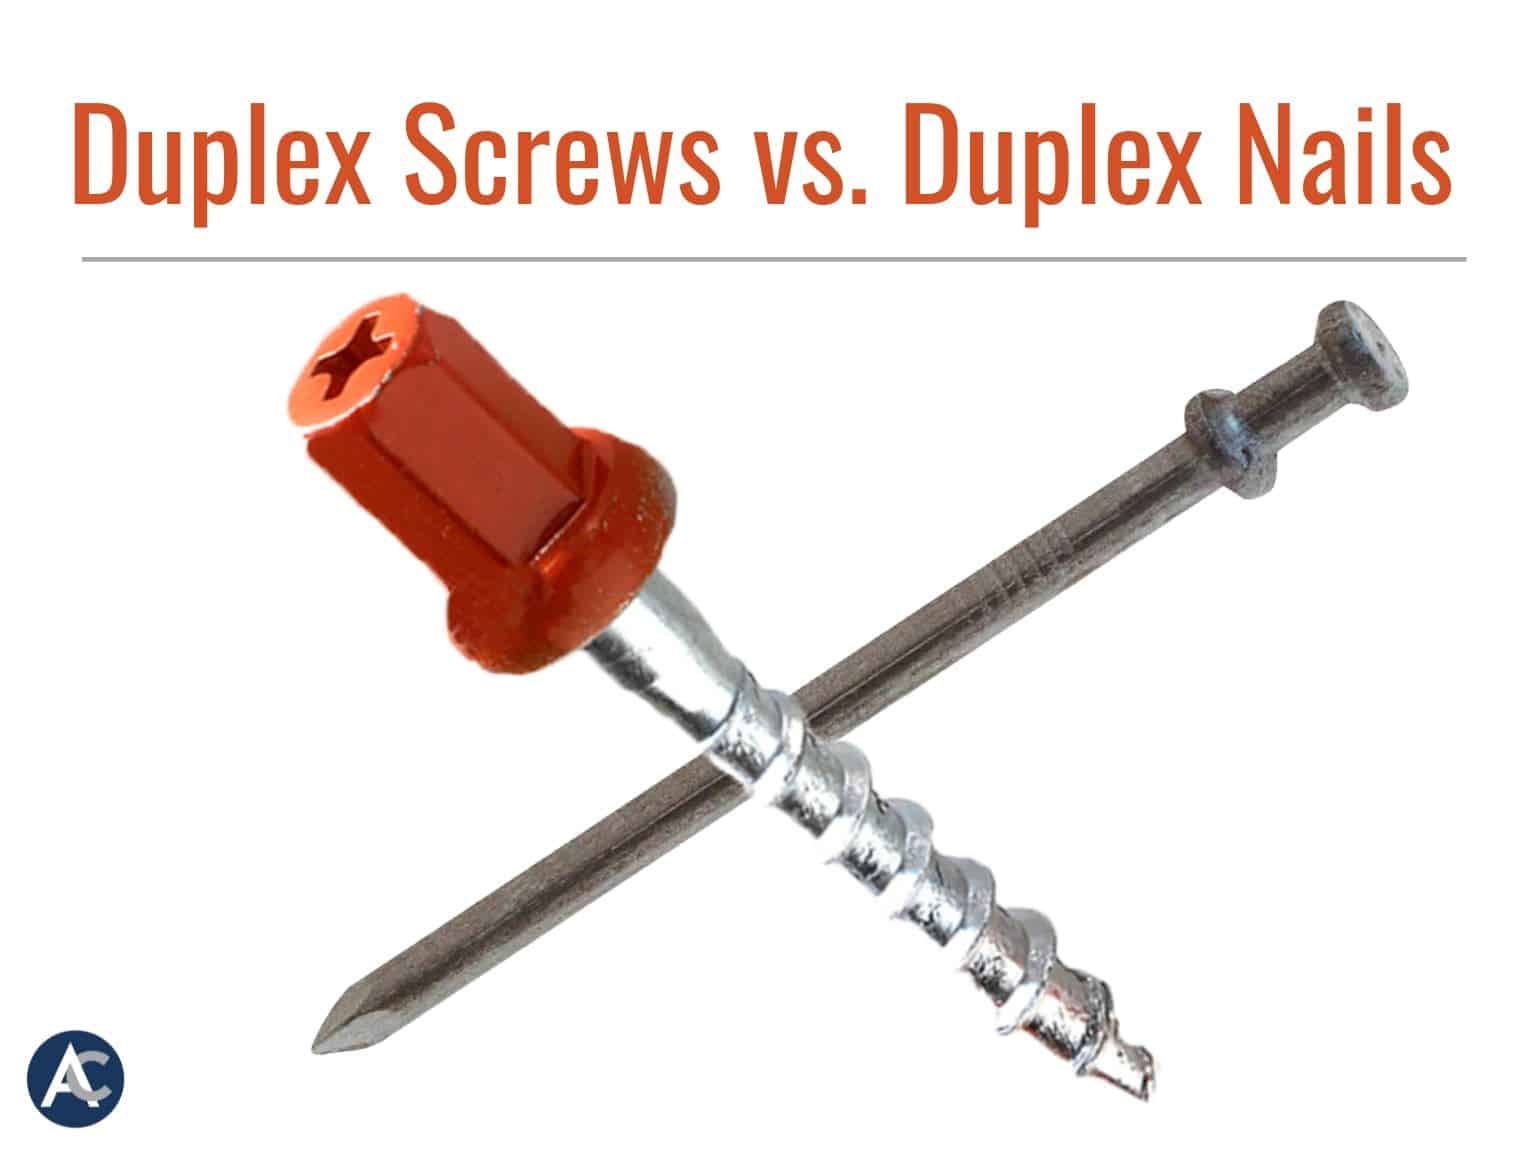 Duplex Screws versus Duplex Nails